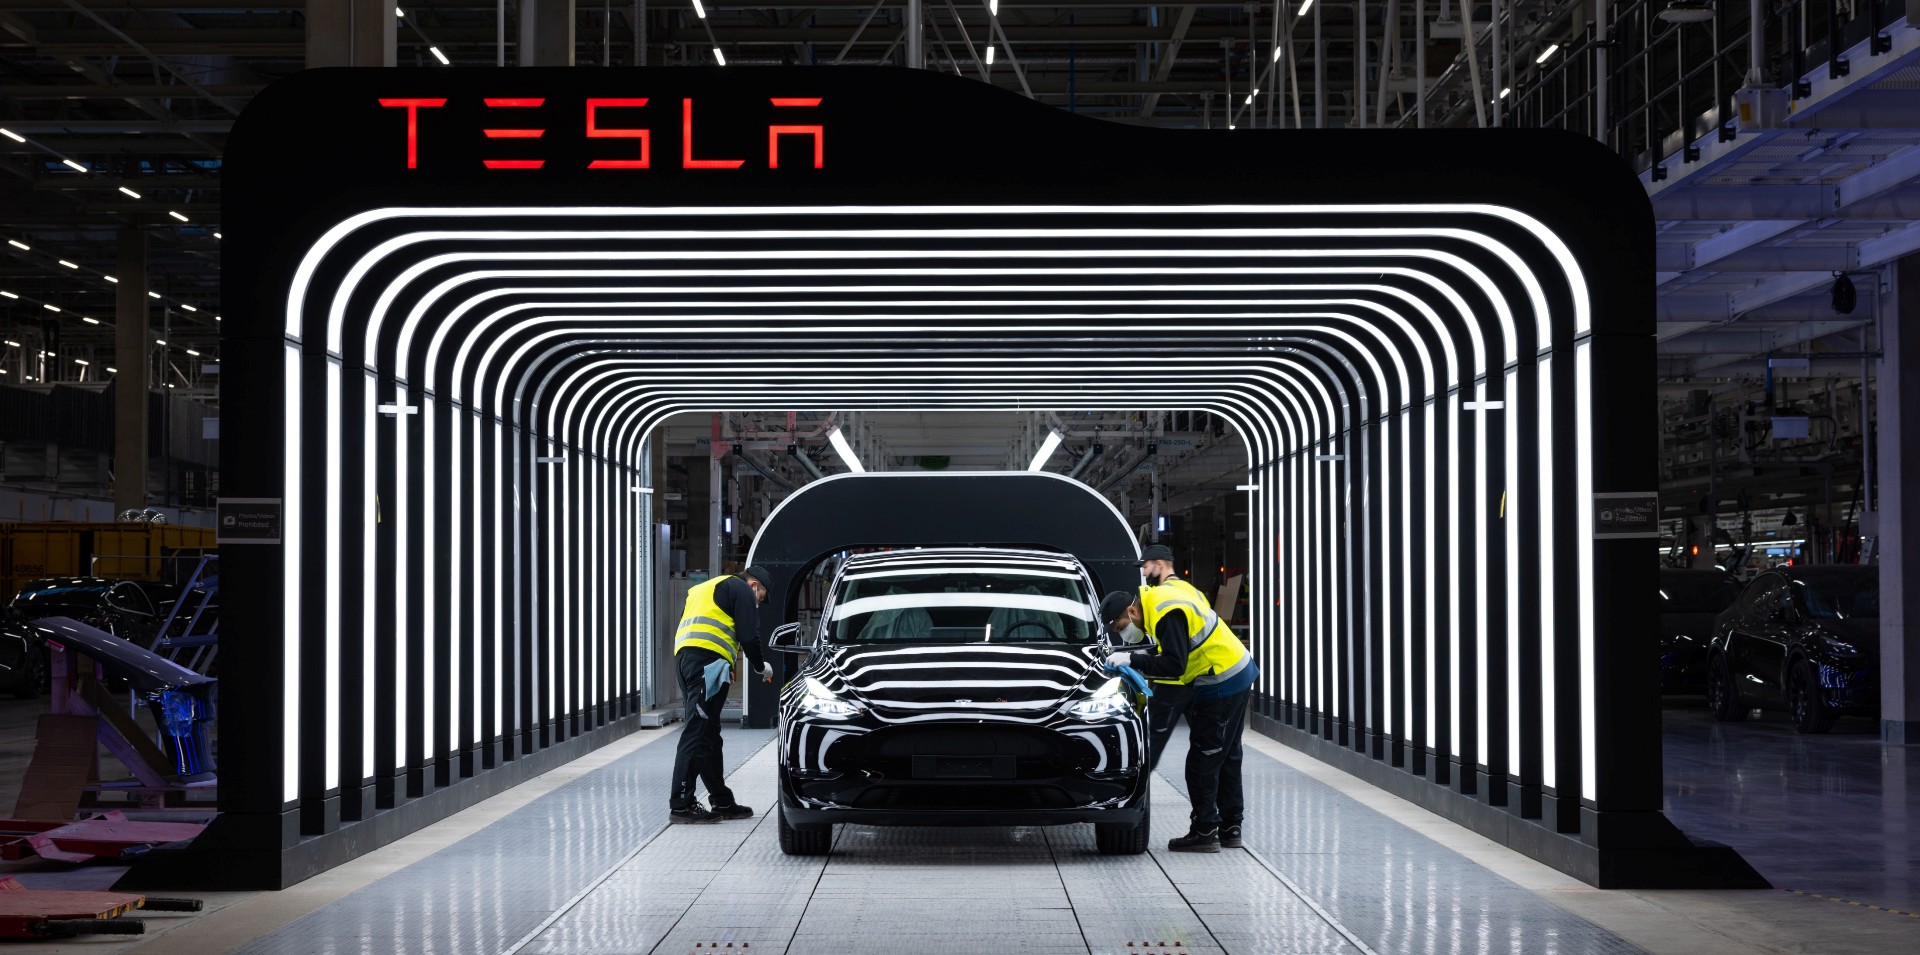 Tesla собирается строить батареи в Giga Berlin быстрее, чем предполагалось ранее, несмотря на недавние сообщения